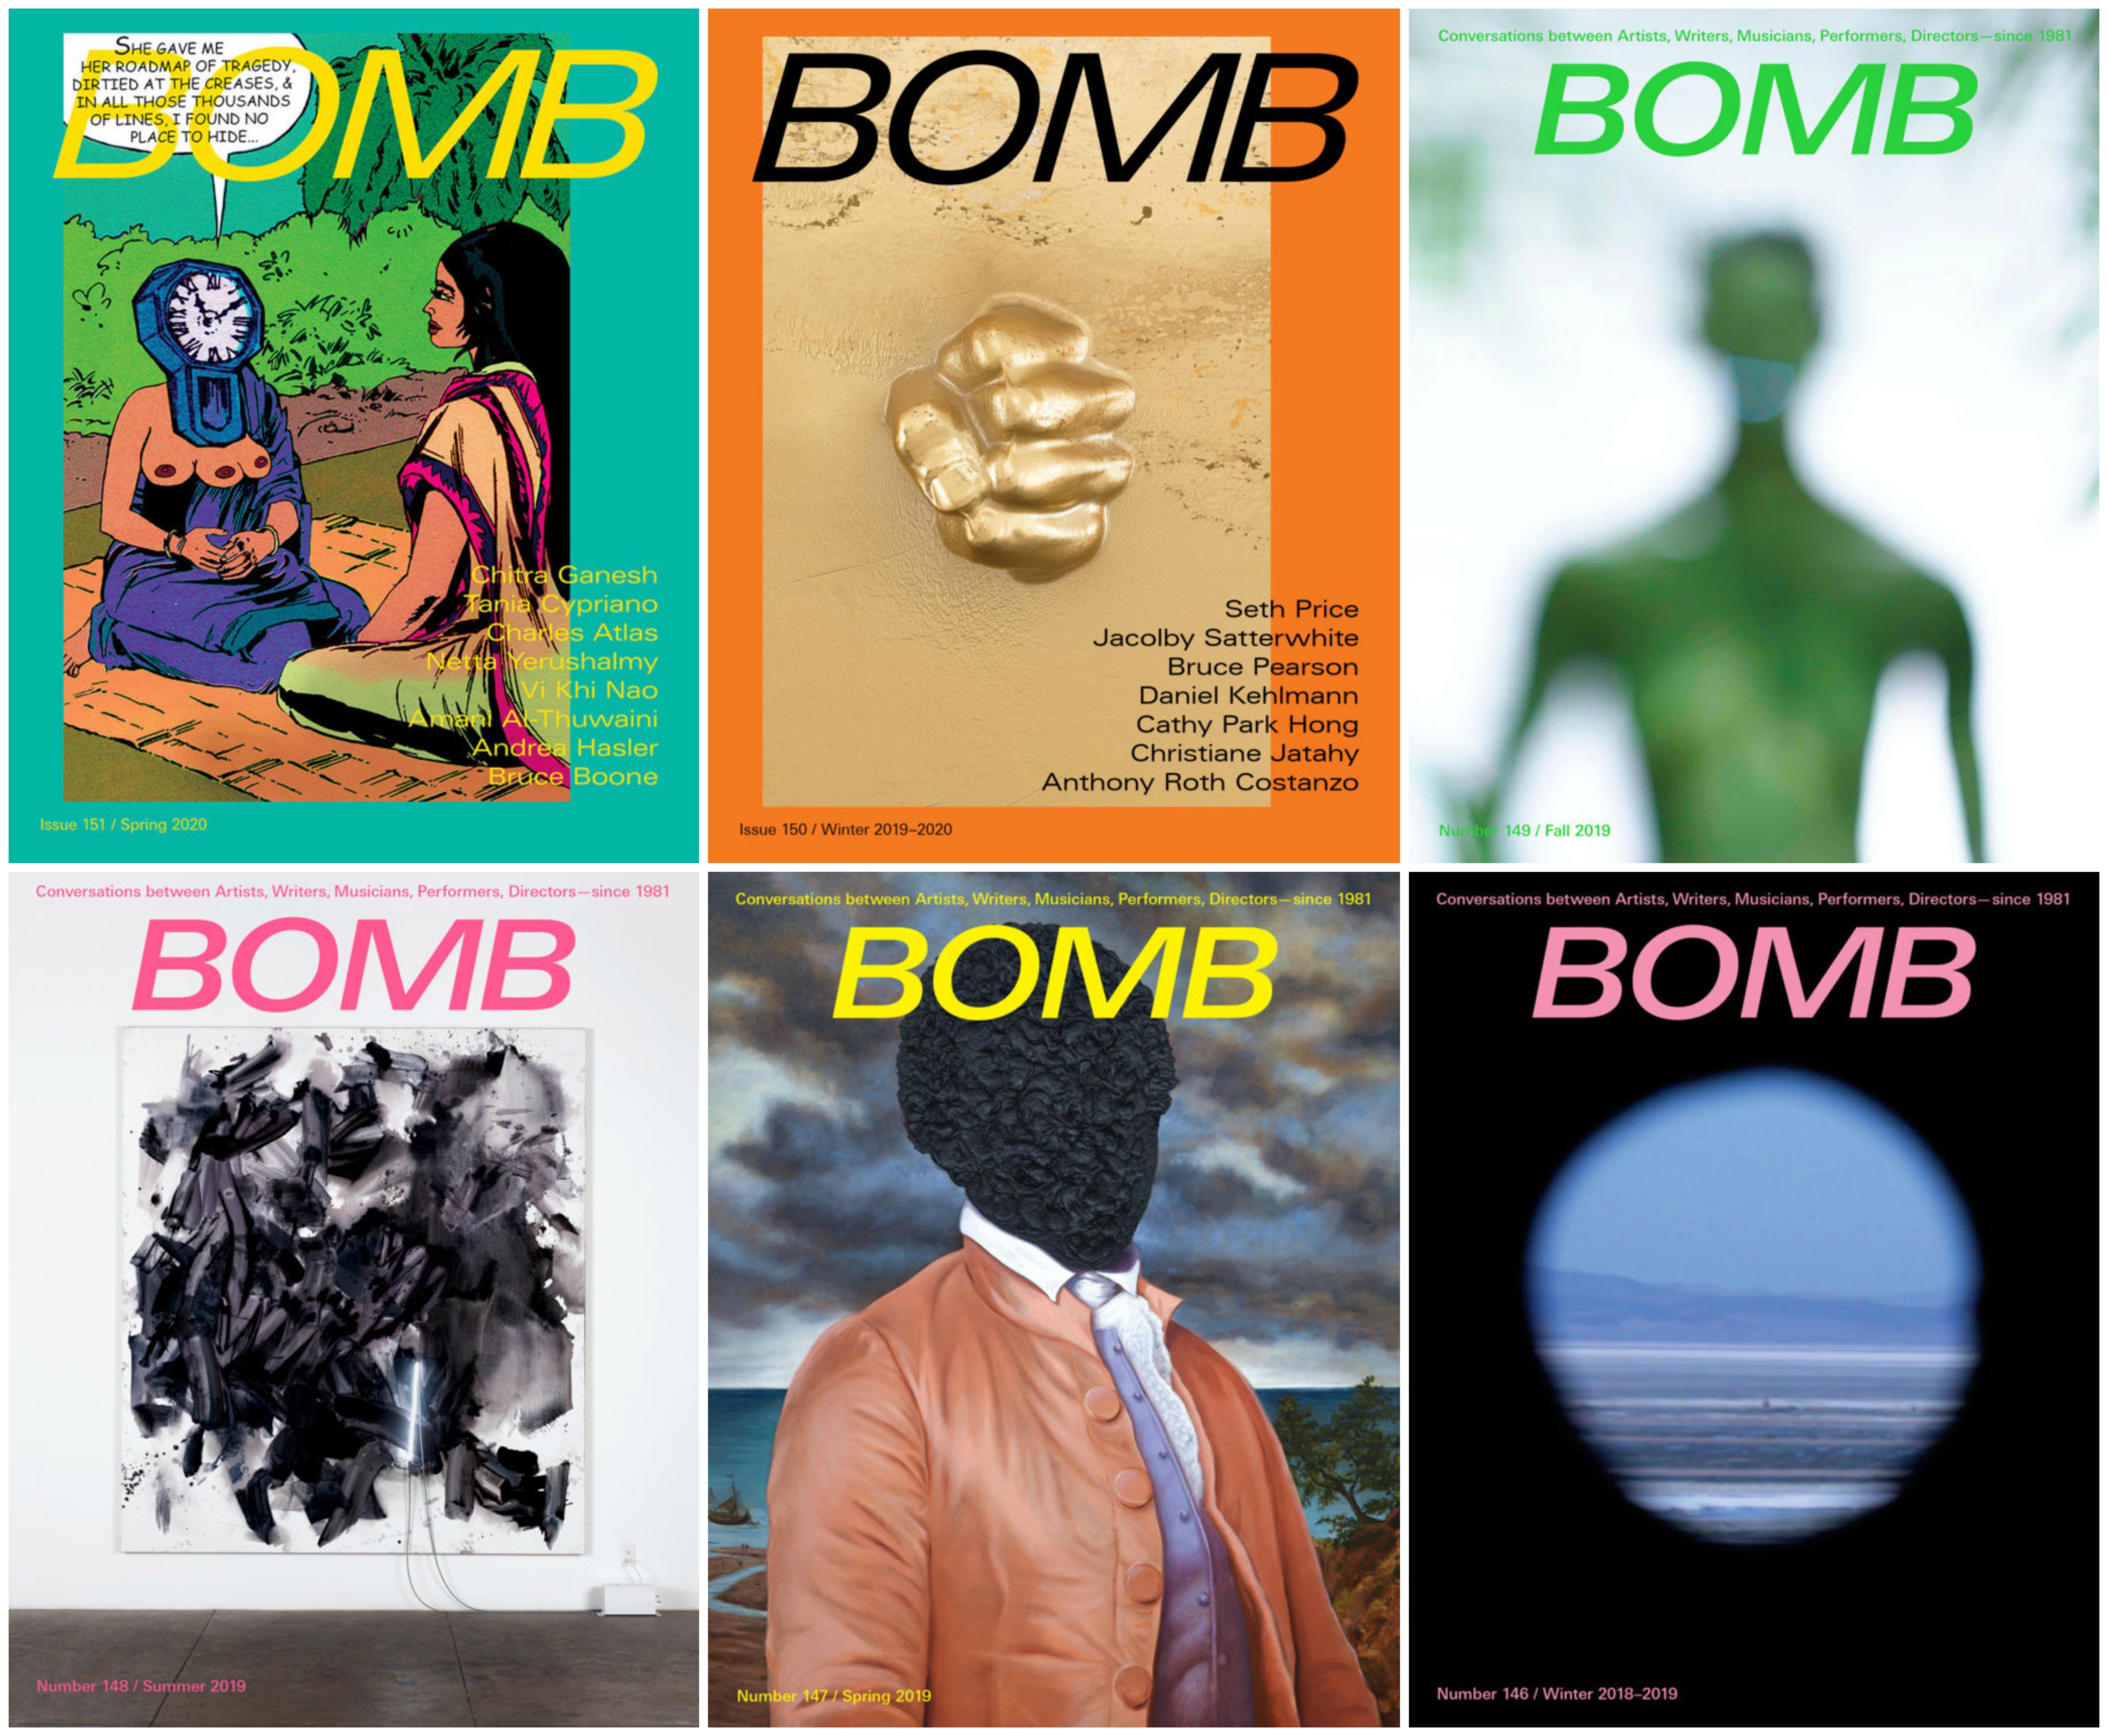 BOMB Magazine covers